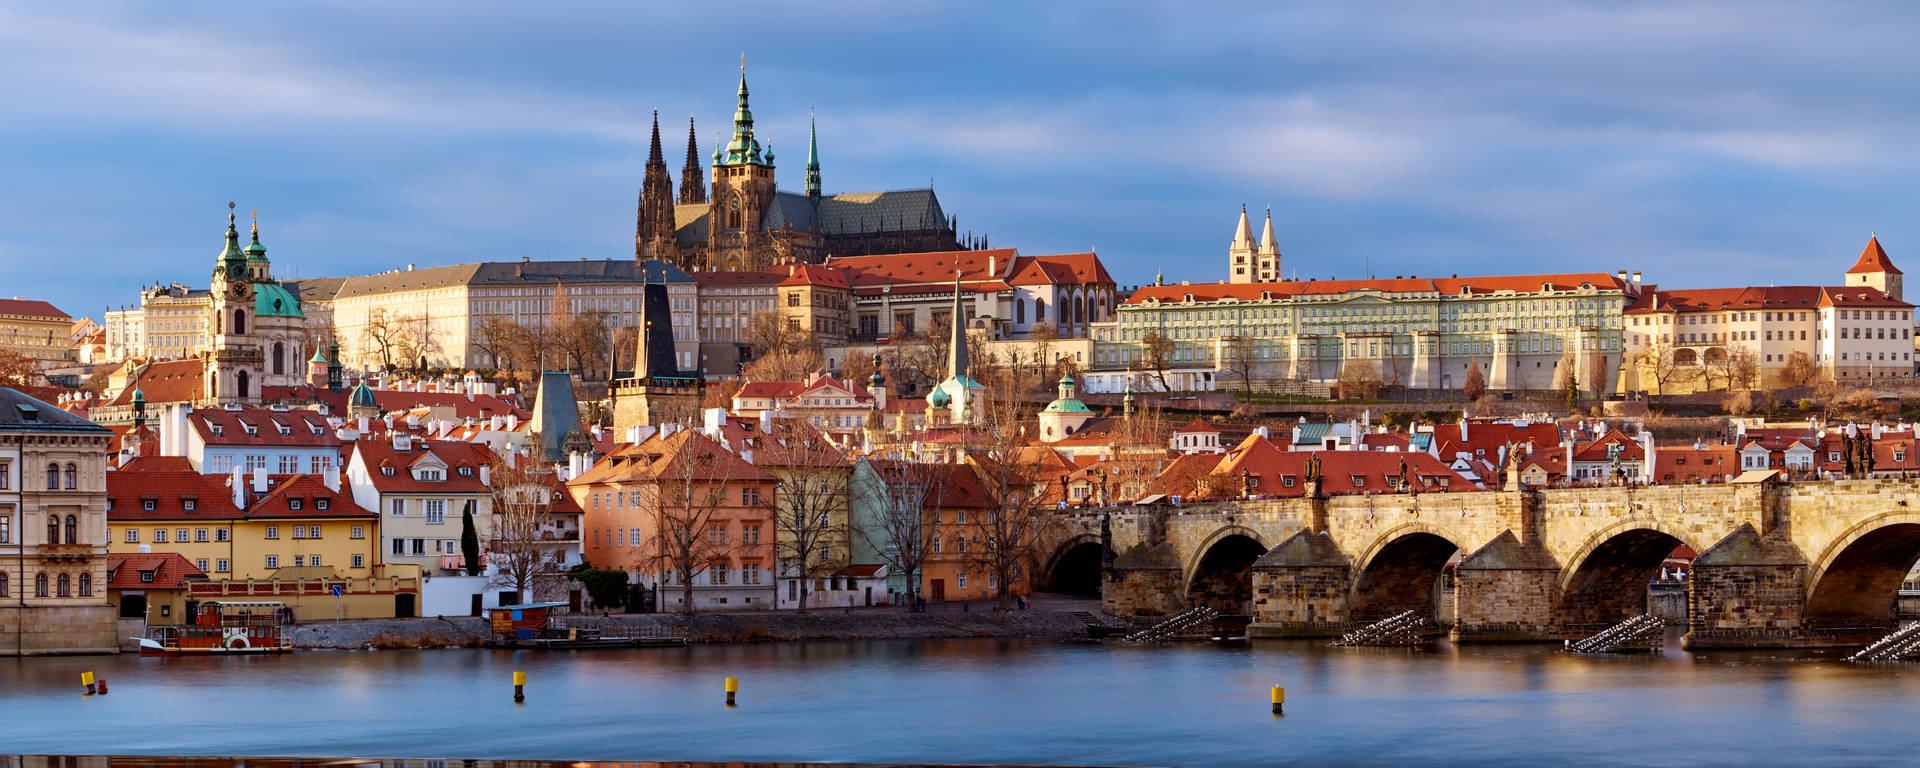 Prague City Riverfront Picture